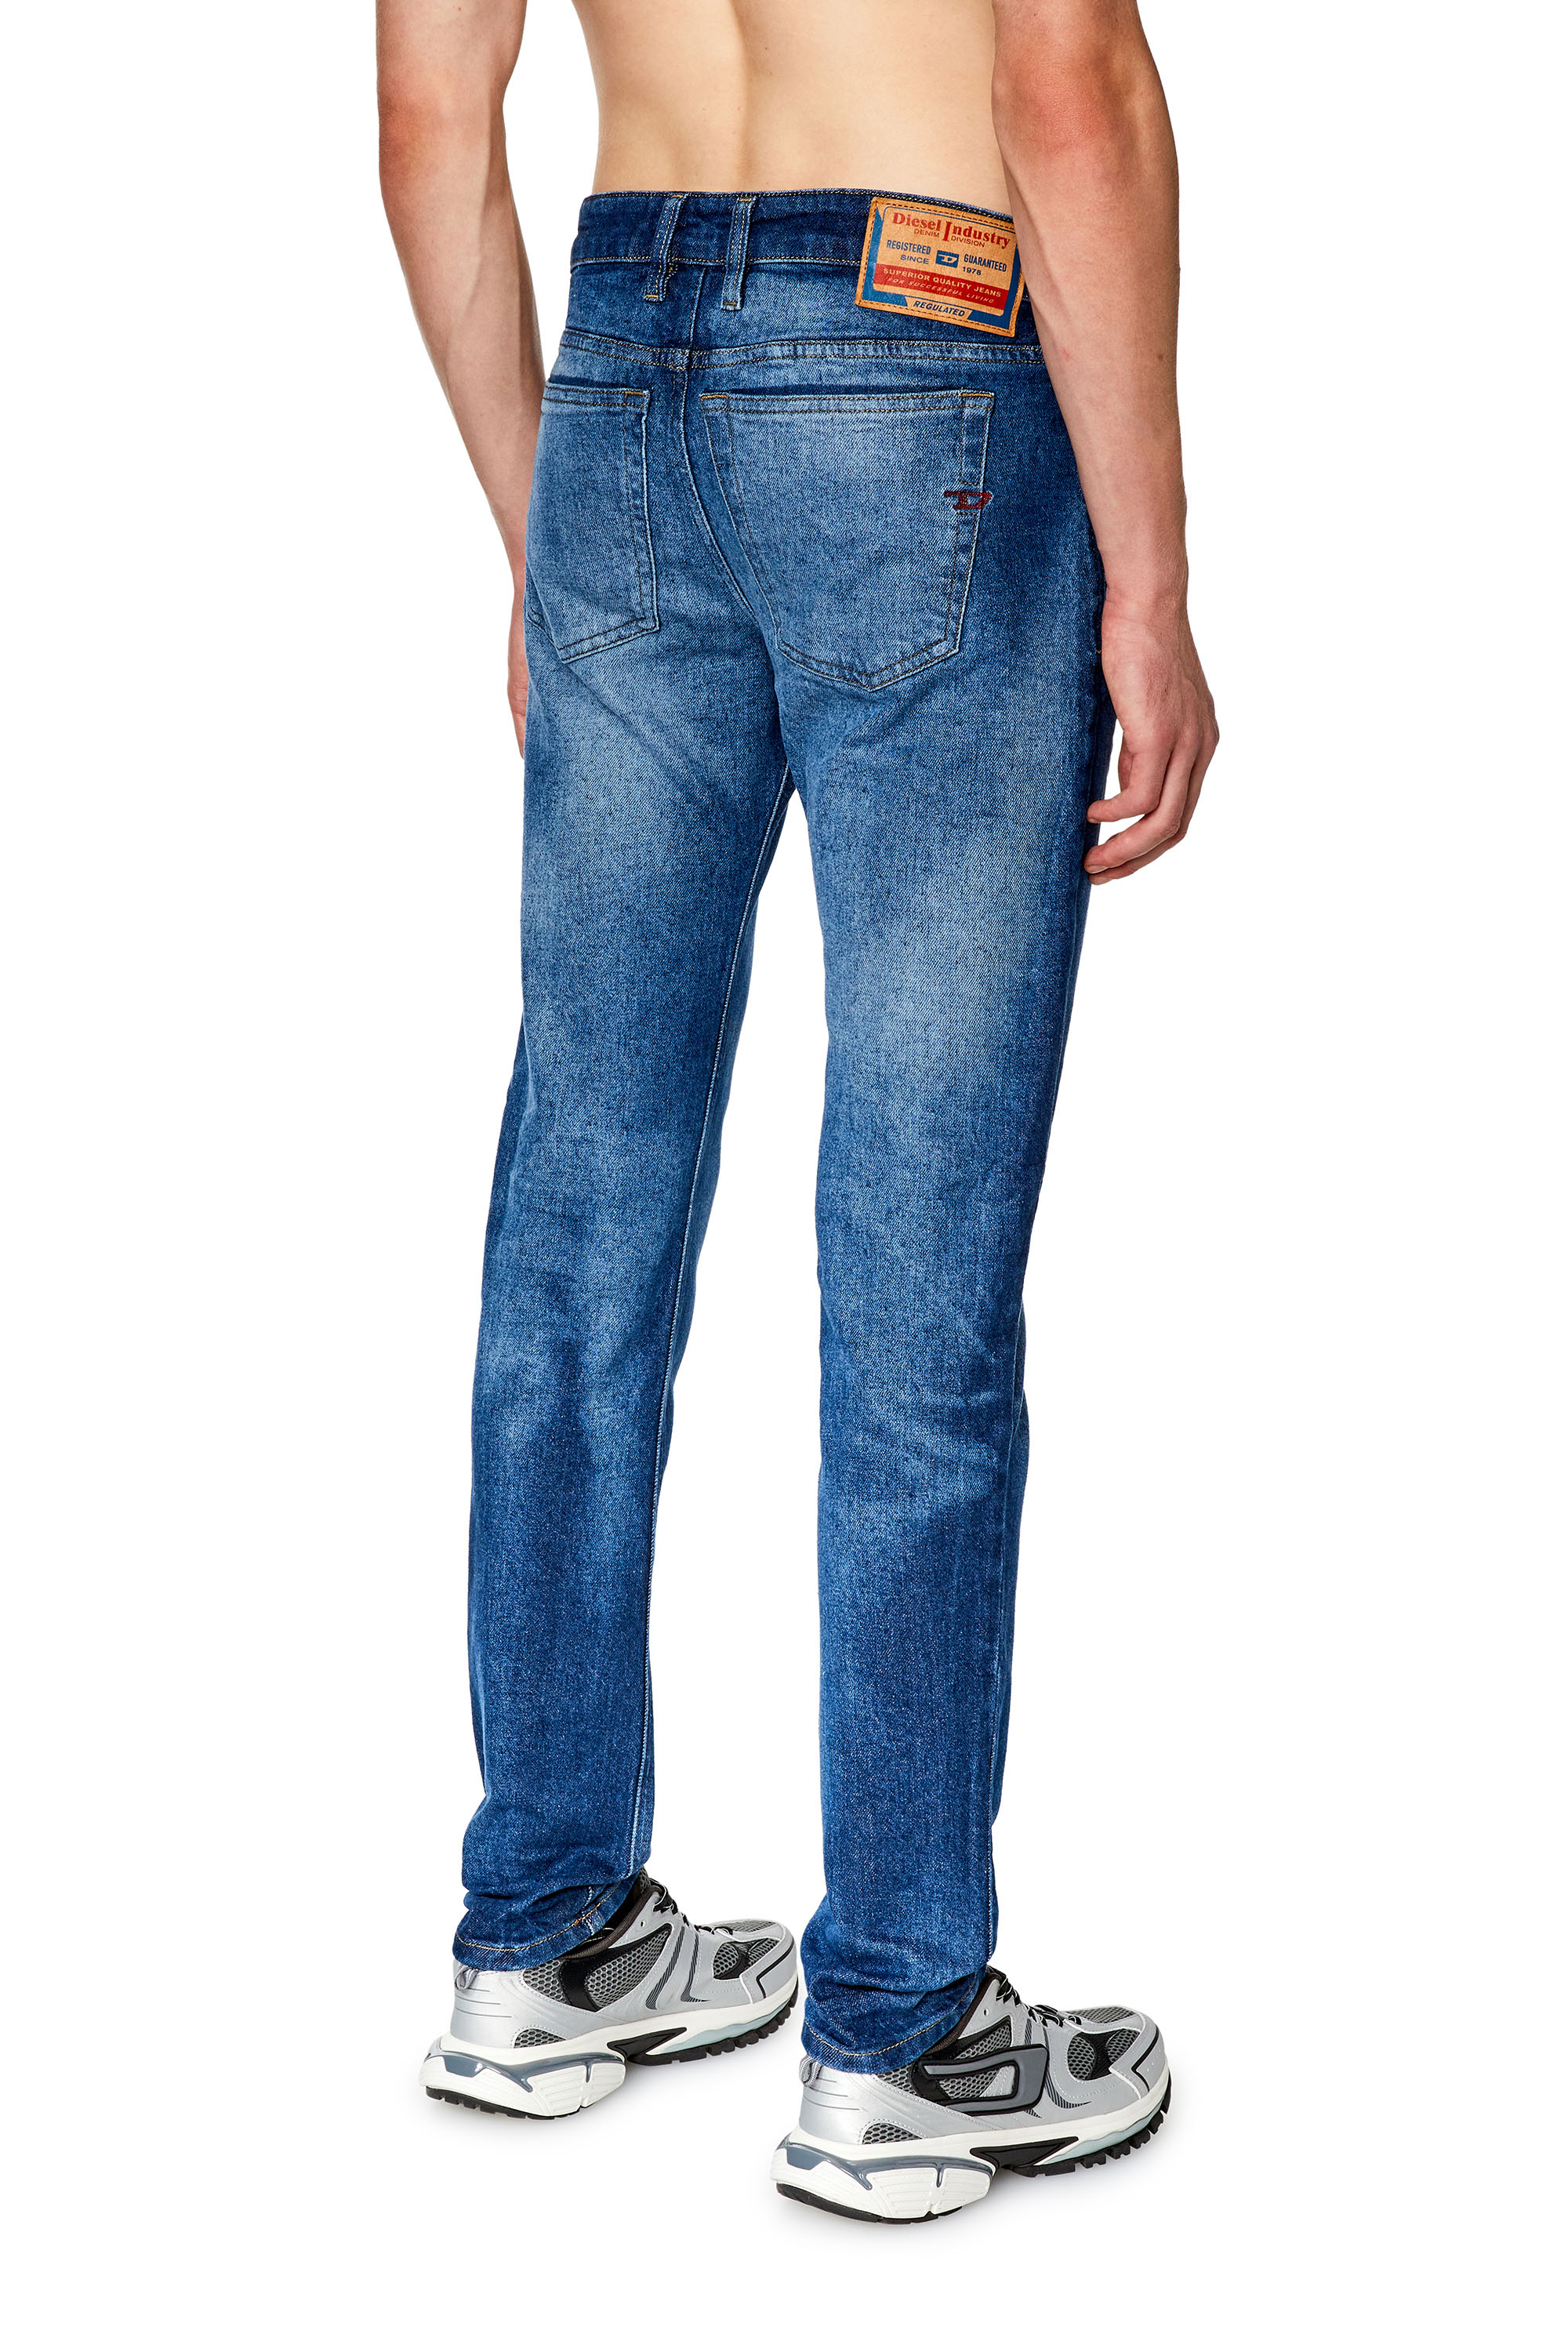 Diesel Industry Denim Men's Jeans 29 Blue RN 93243 CA 25594